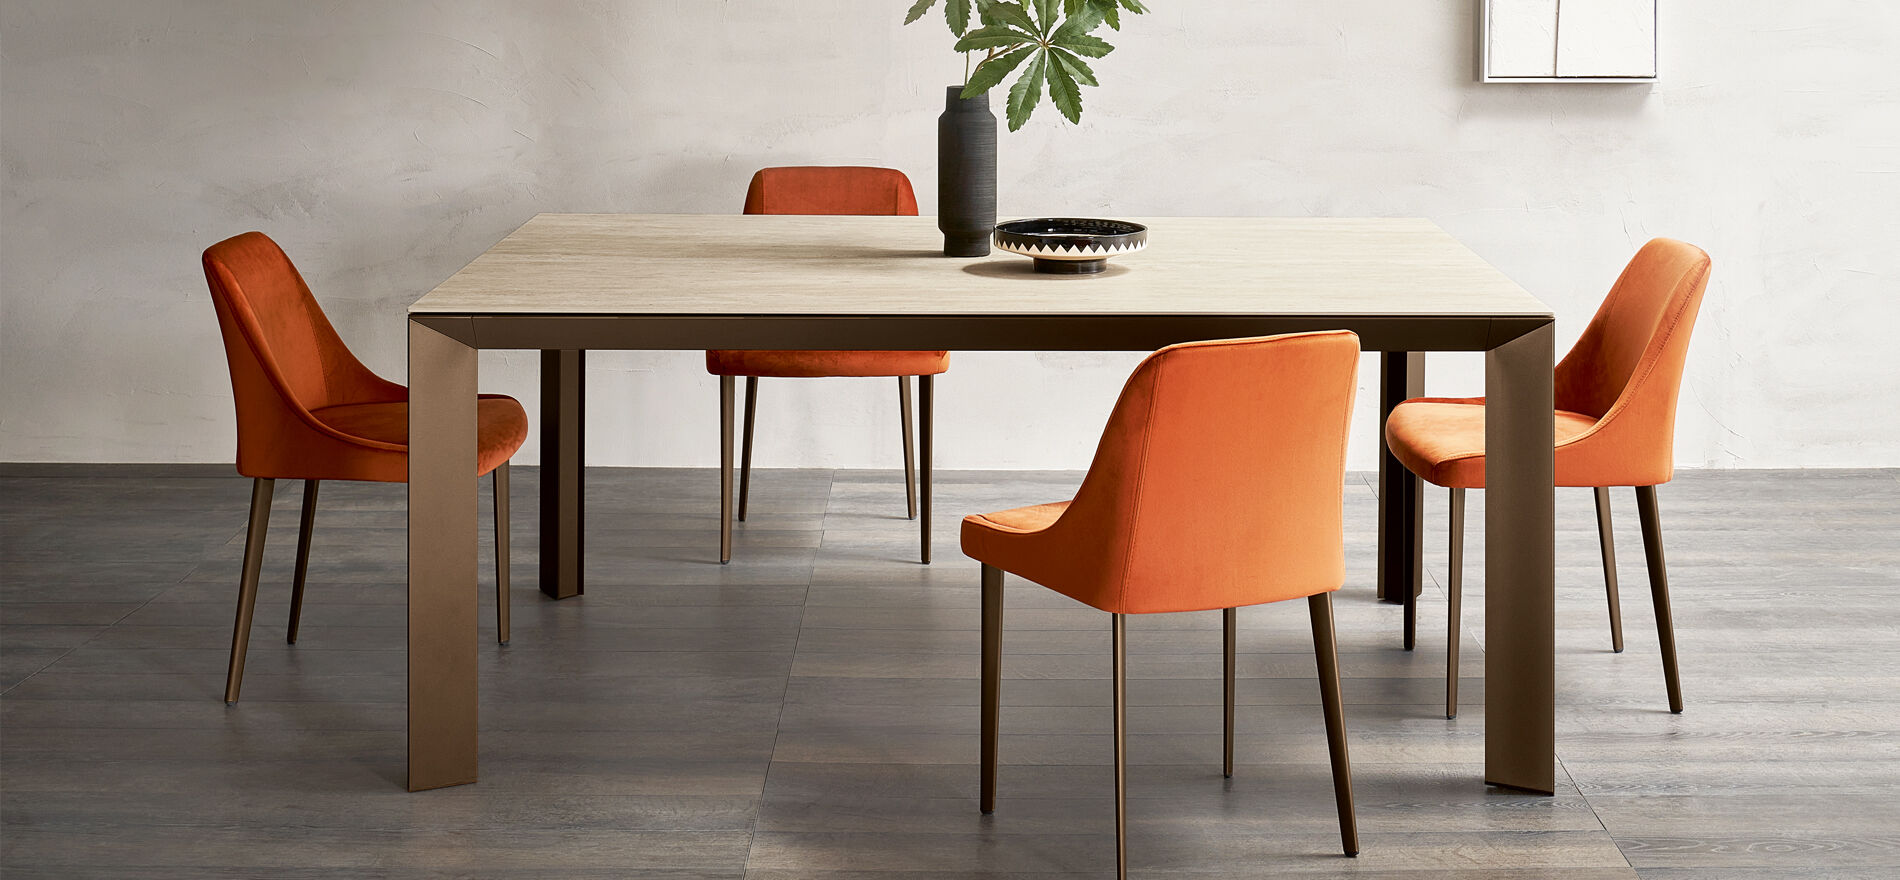 Come scegliere la sedia perfetta per la tua tavola: Una Guida per un Abbinamento Funzionale ed Elegante